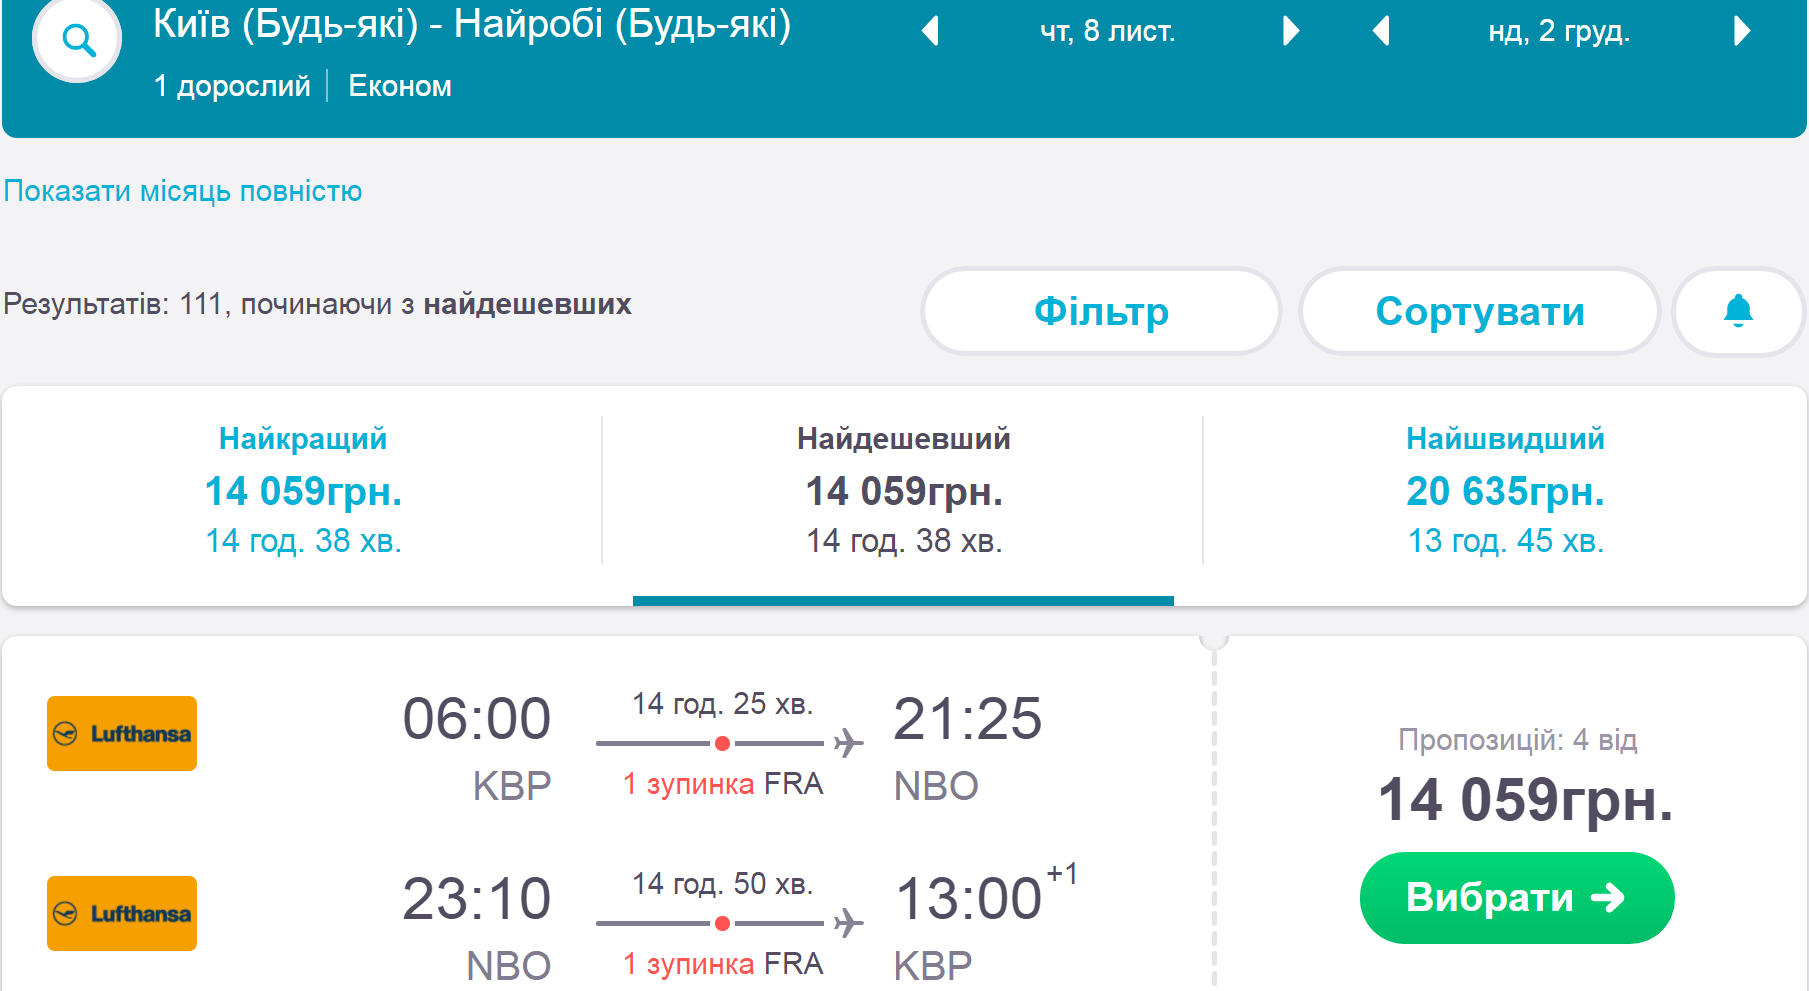 Купить авиабилеты краснодар хабаровск минск одесса авиабилеты прямой рейс цена